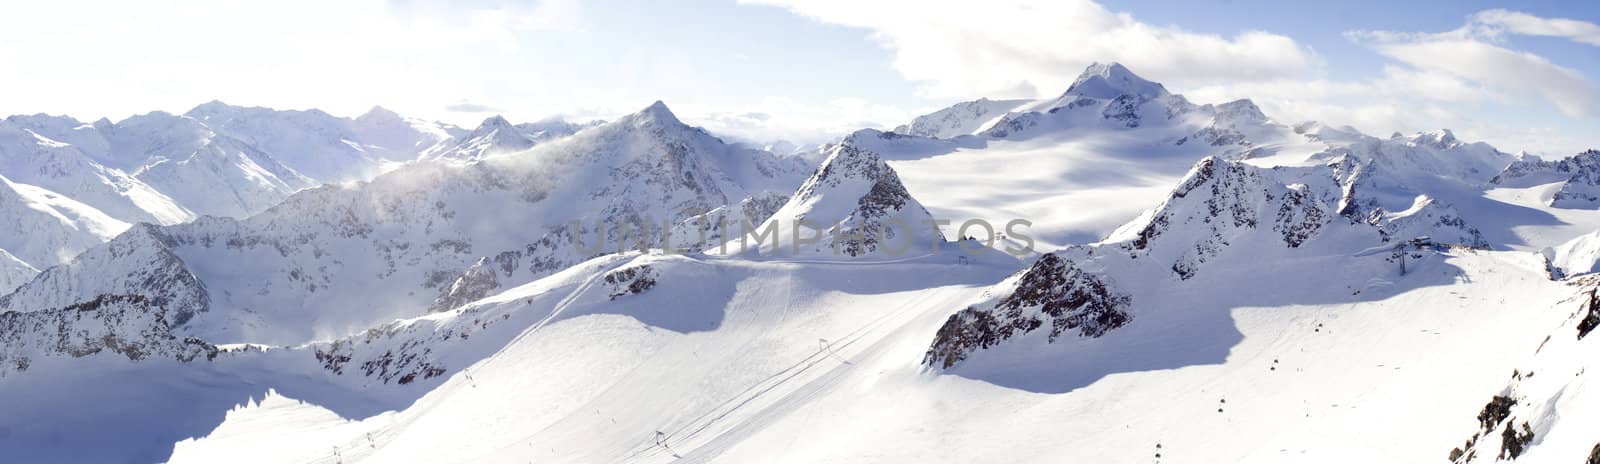 Panorama Wildspitze Solden ski area